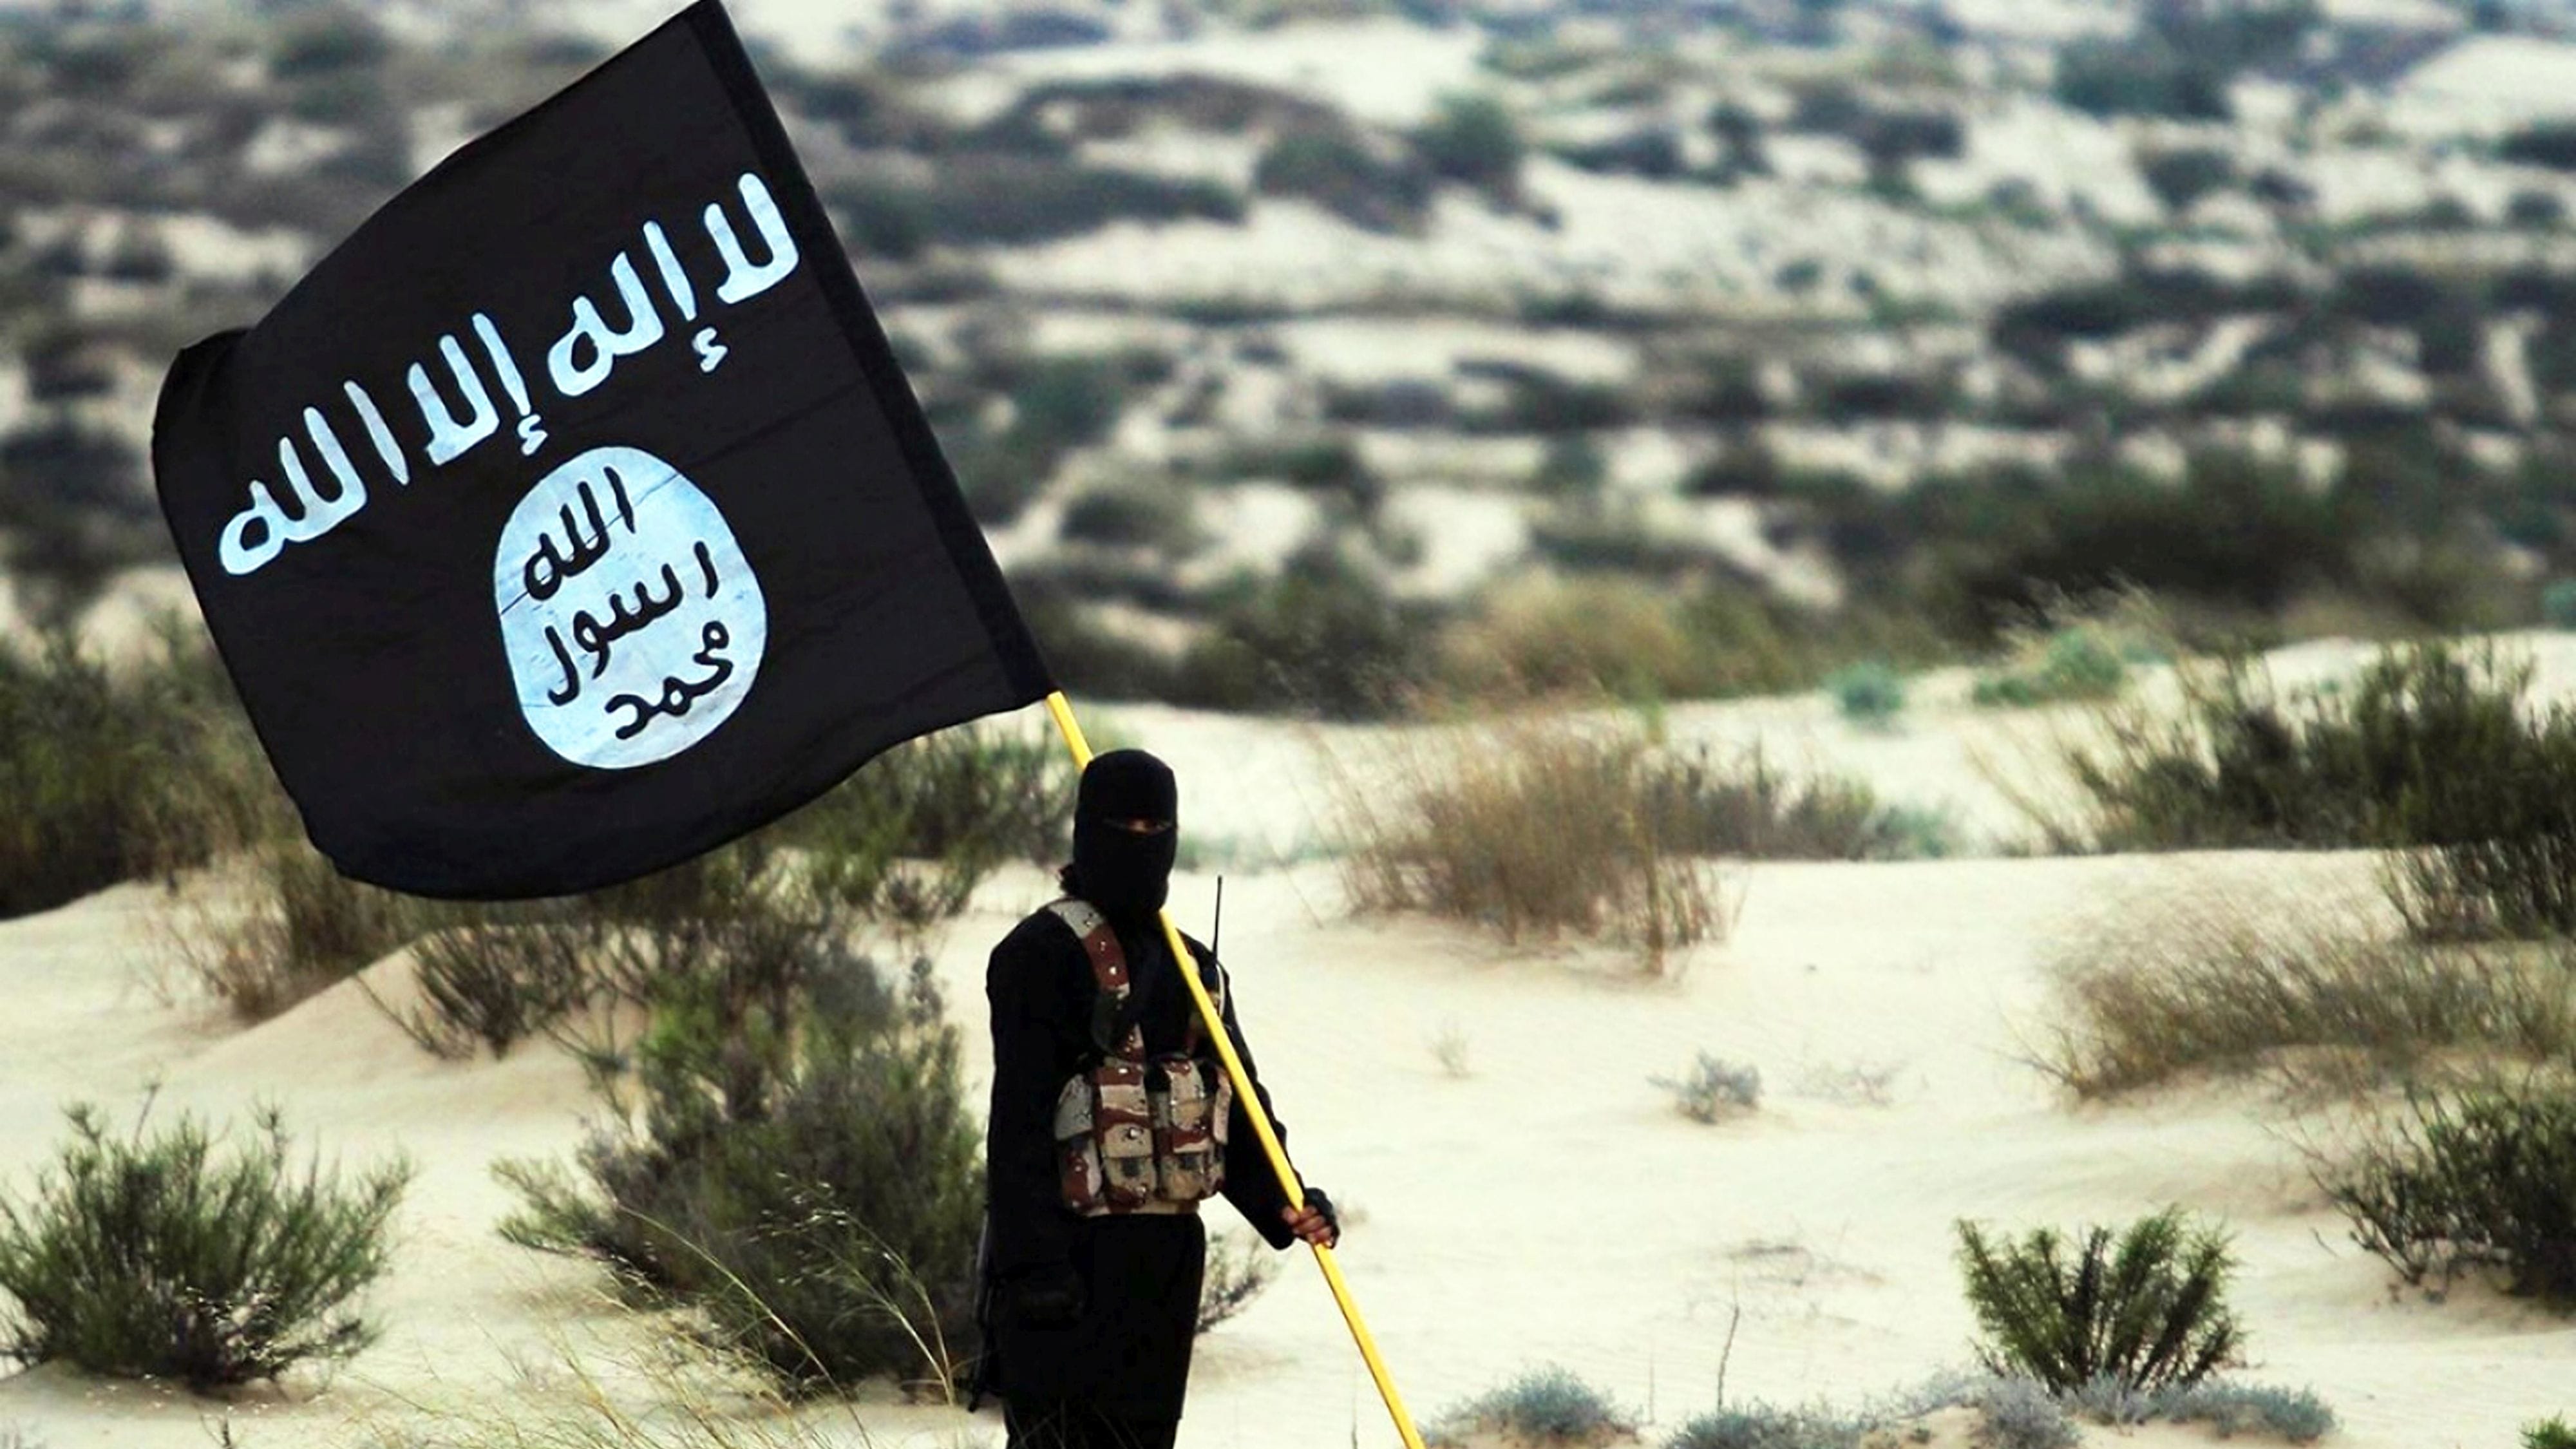 Terror-Miliz IS droht mit Anschlägen in Europa – auch auf Fußball-EM?